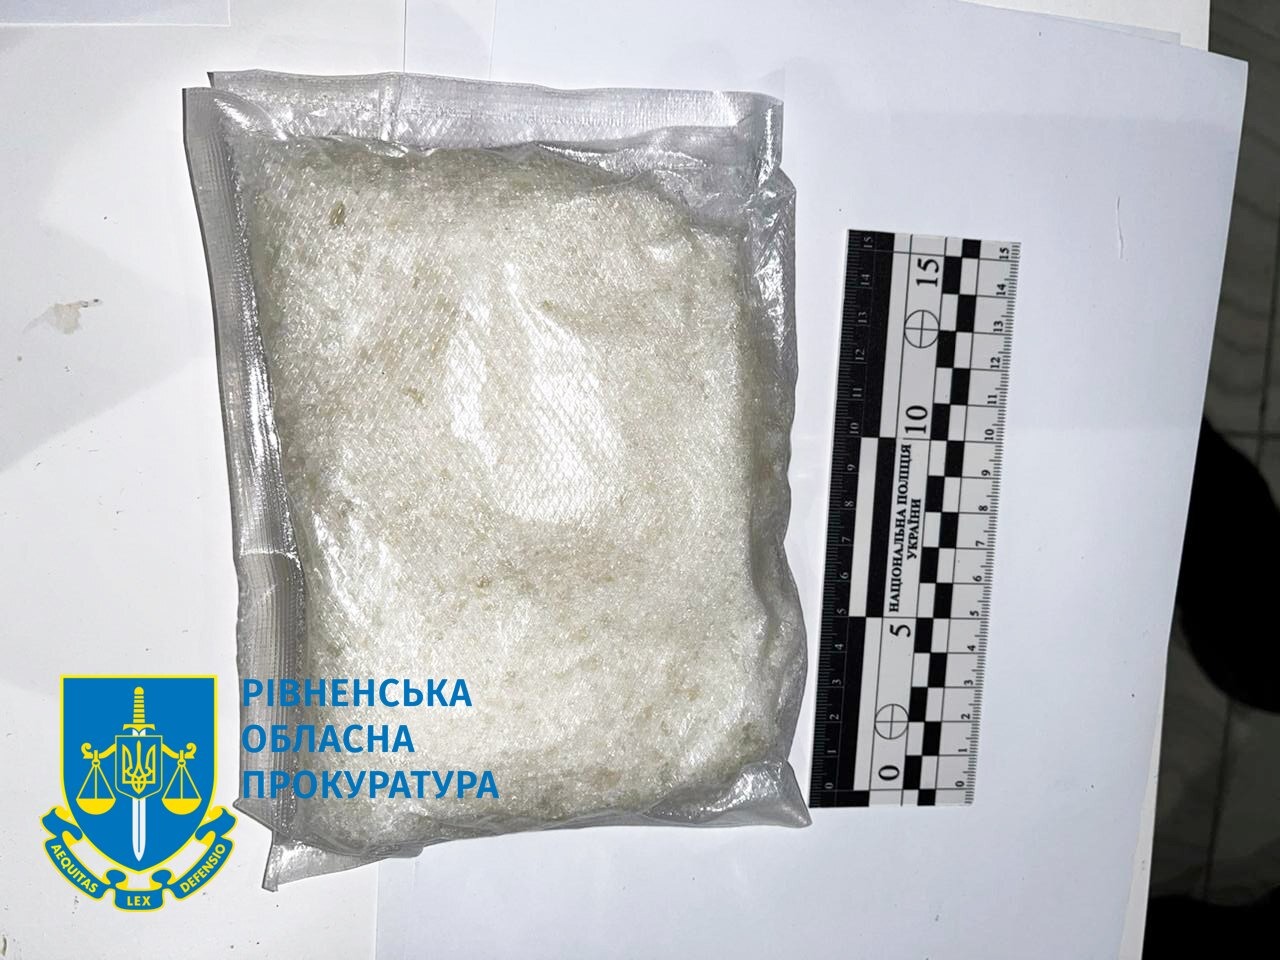 Жителю Рівне повідомлено про підозру у торгівлі наркотиками – правоохоронці вилучили психотропних речовин на майже 4 млн грн